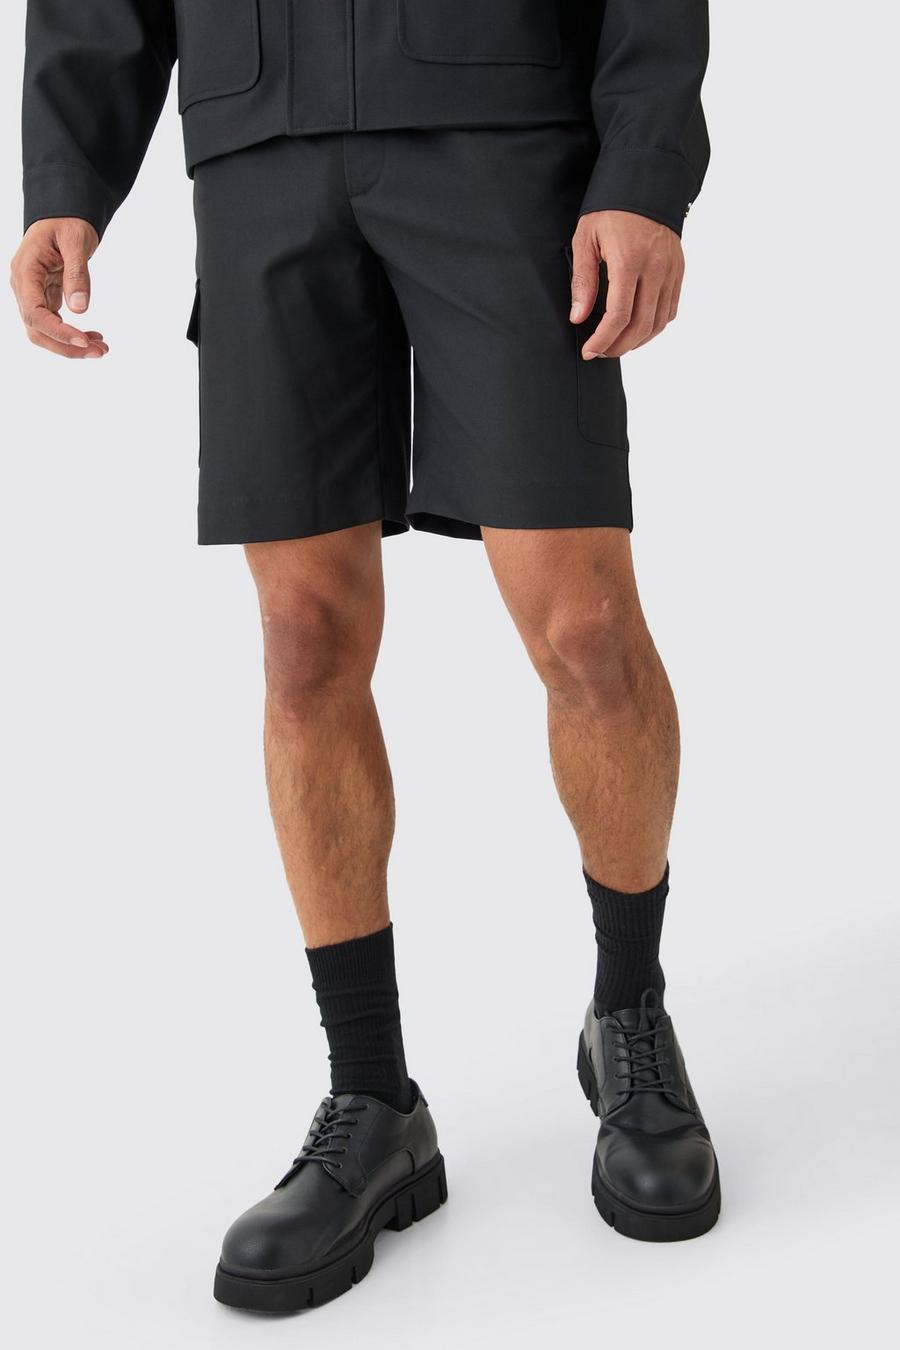 Black Getailleerde Baggy Cargo Shorts